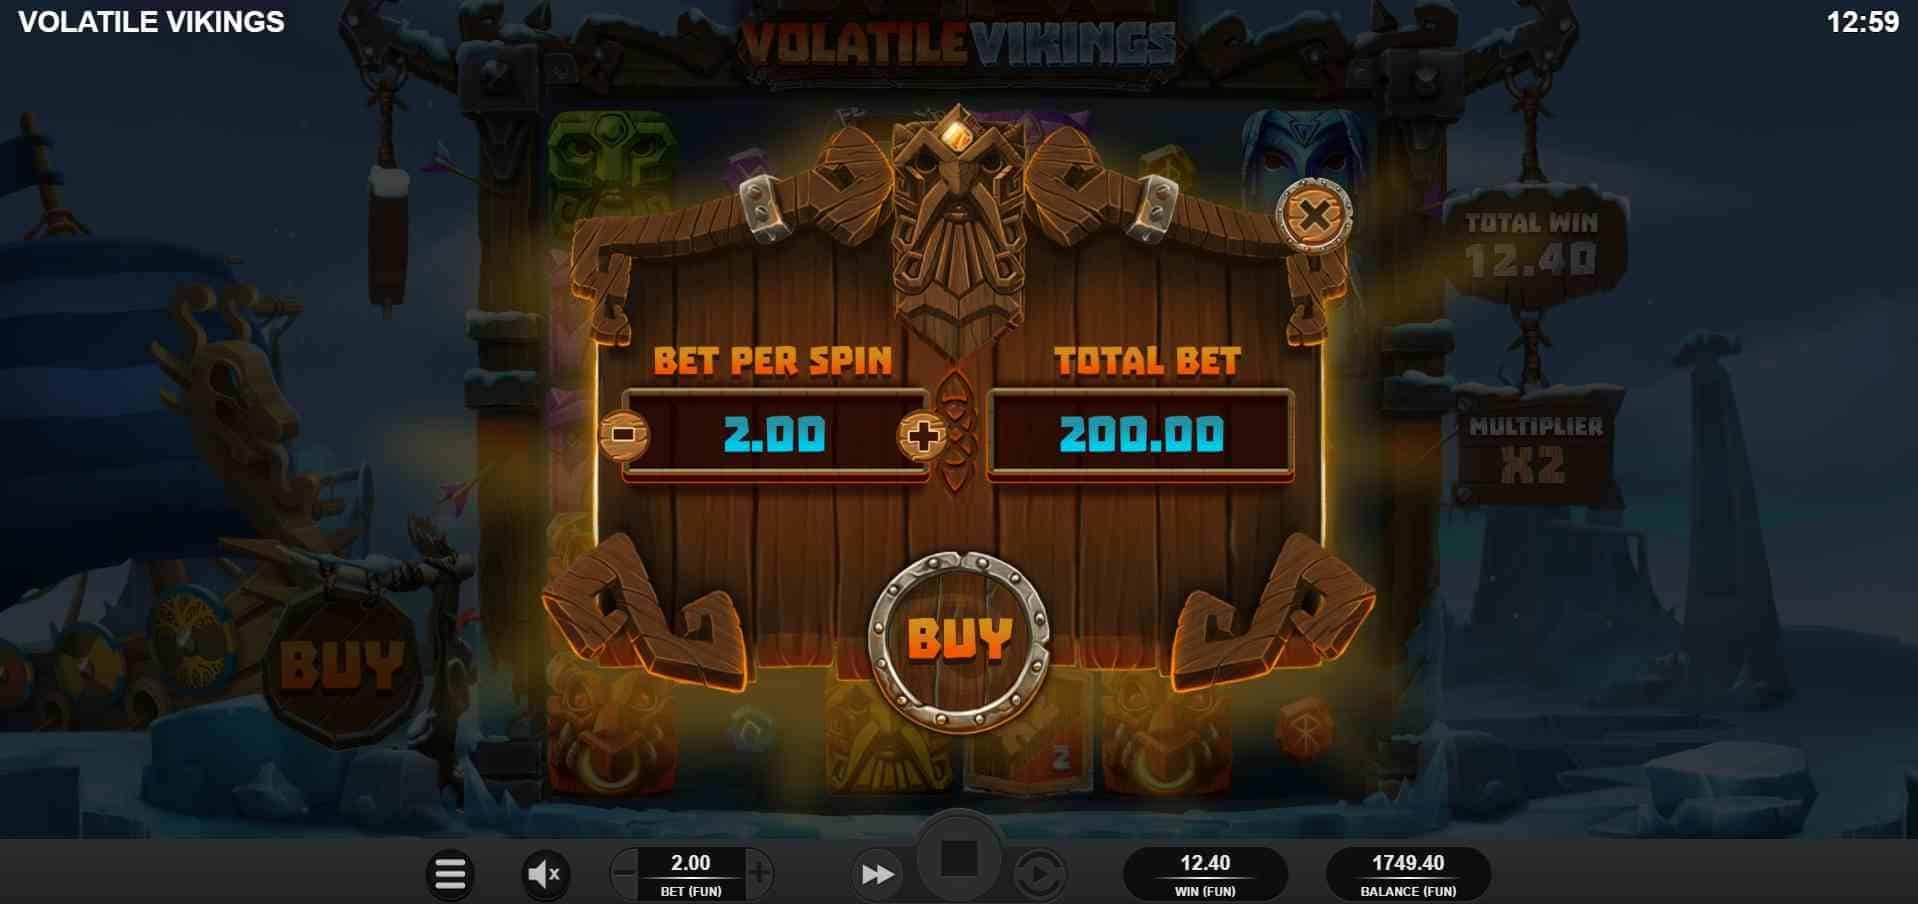 Volatile Vikings Bonus Buy